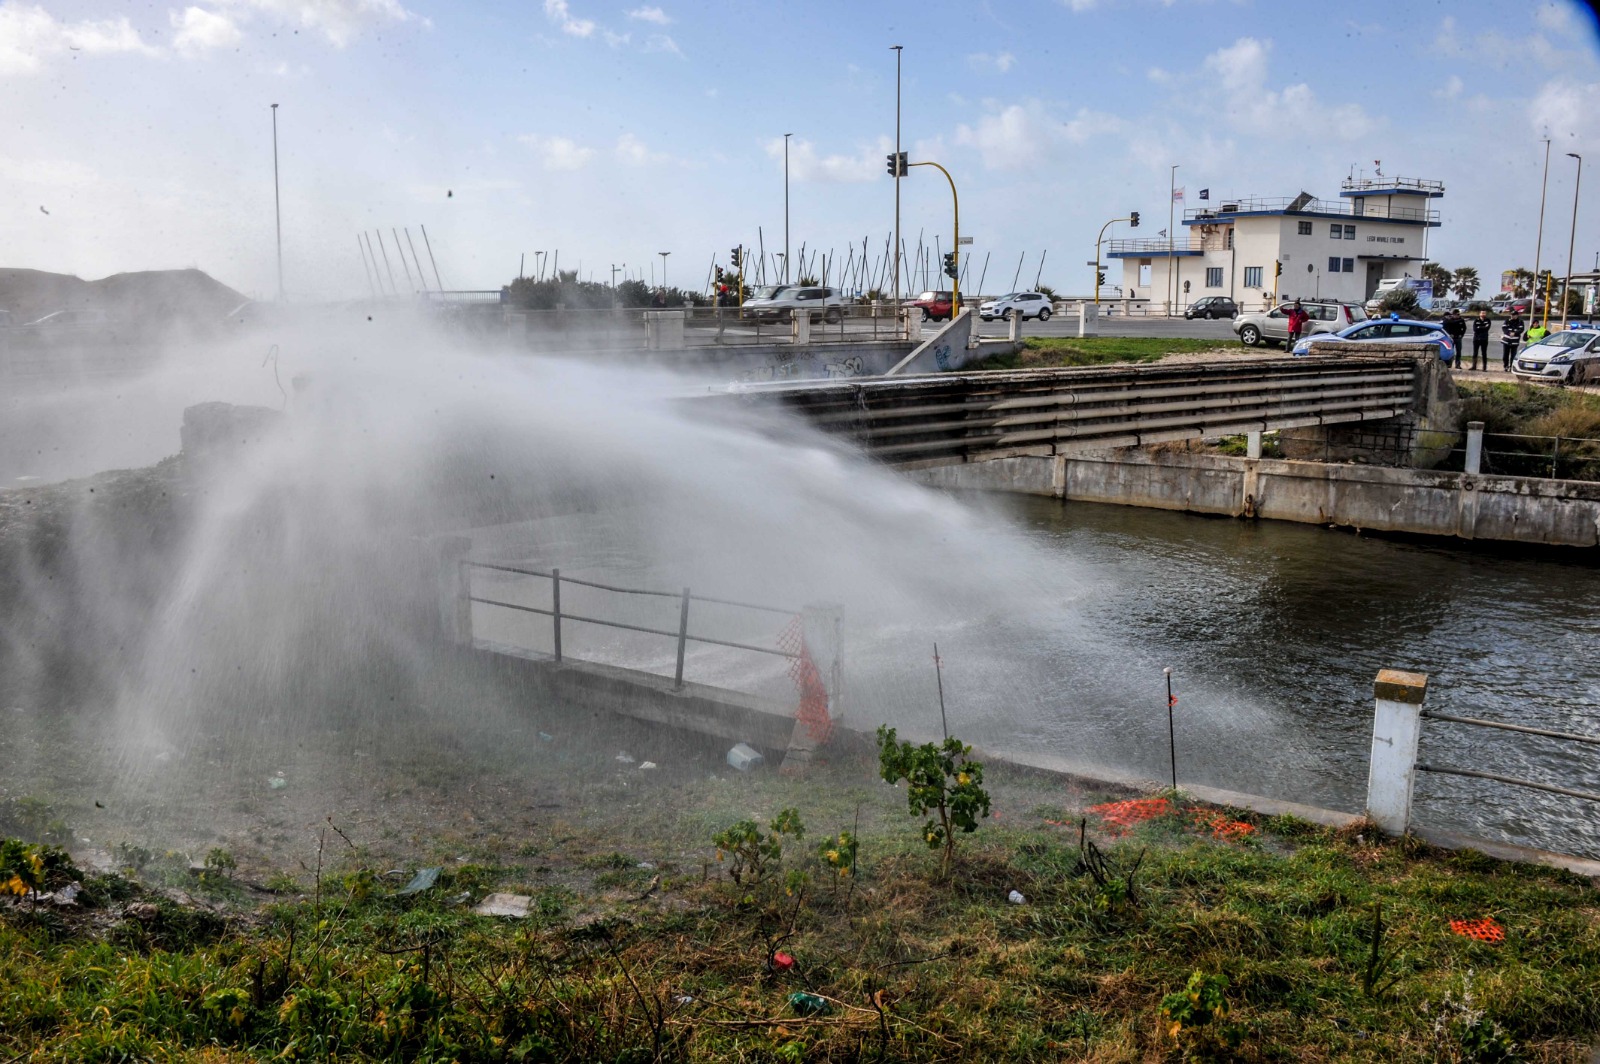 L'imponente perdita d'acqua dalla condotta sul Canale dei Pescatori